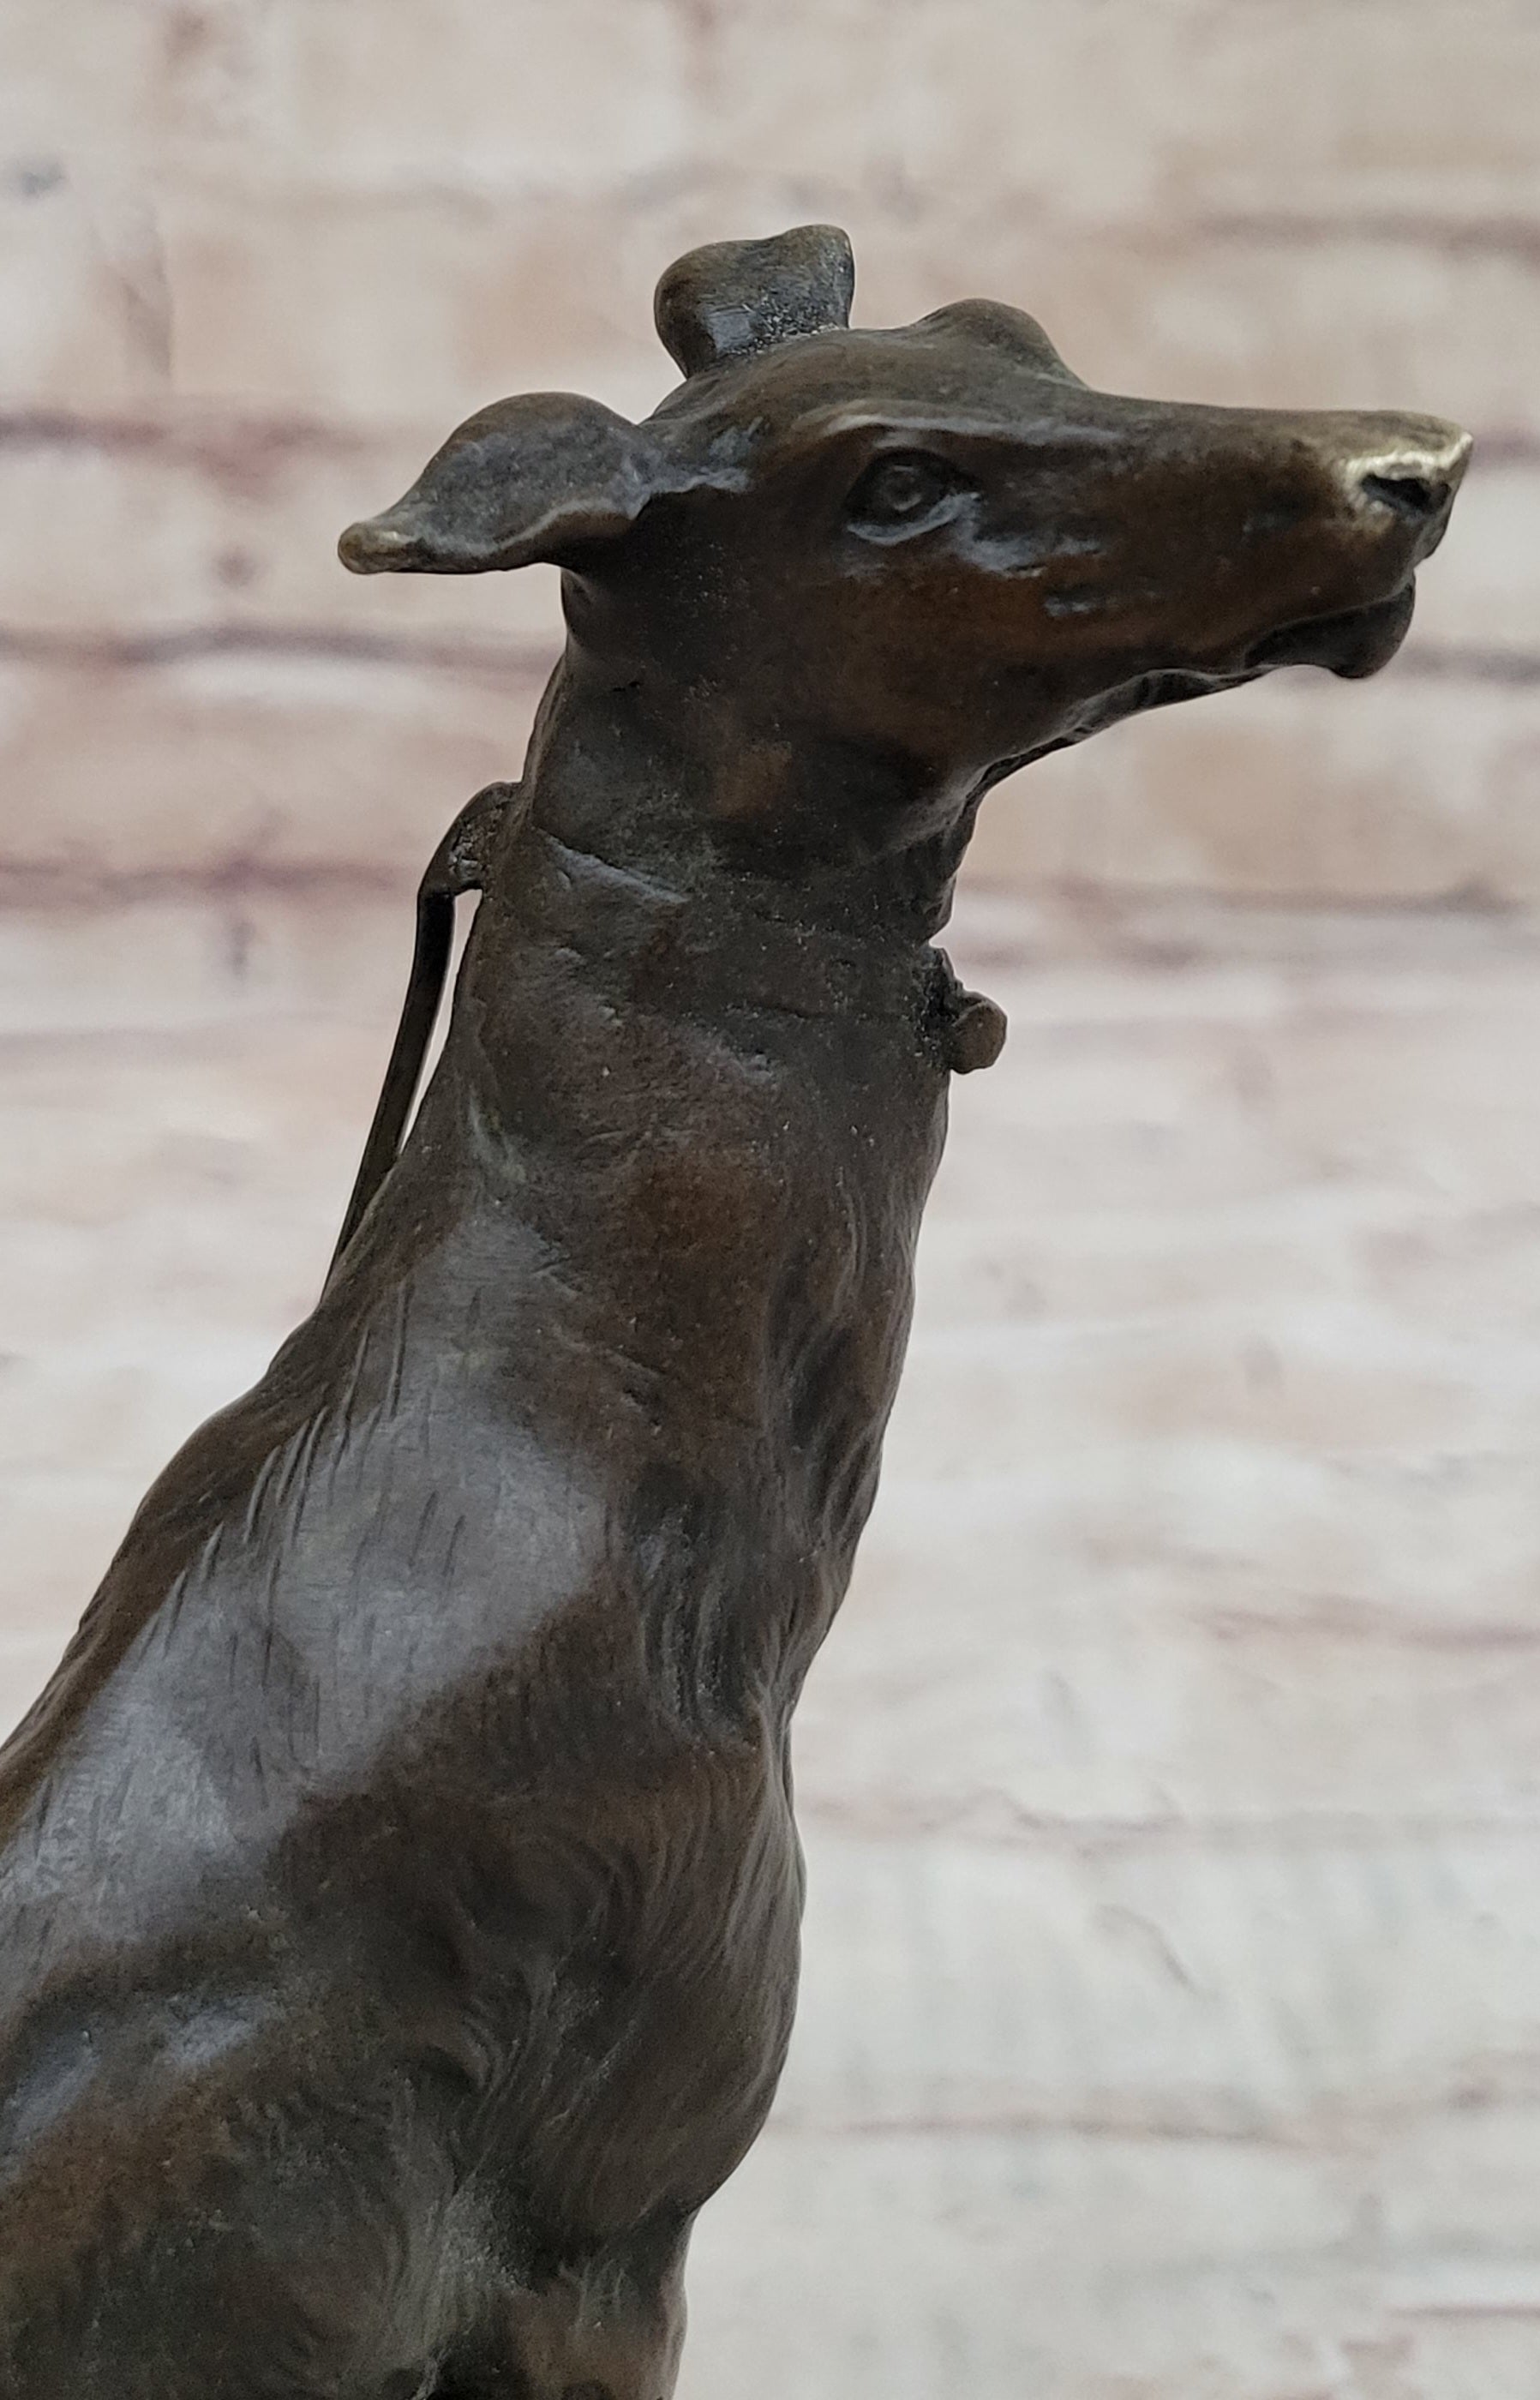 Vienna Bronze Greyhound Dog Animal Pet Bronze Trophy Sculpture Statue Figurine